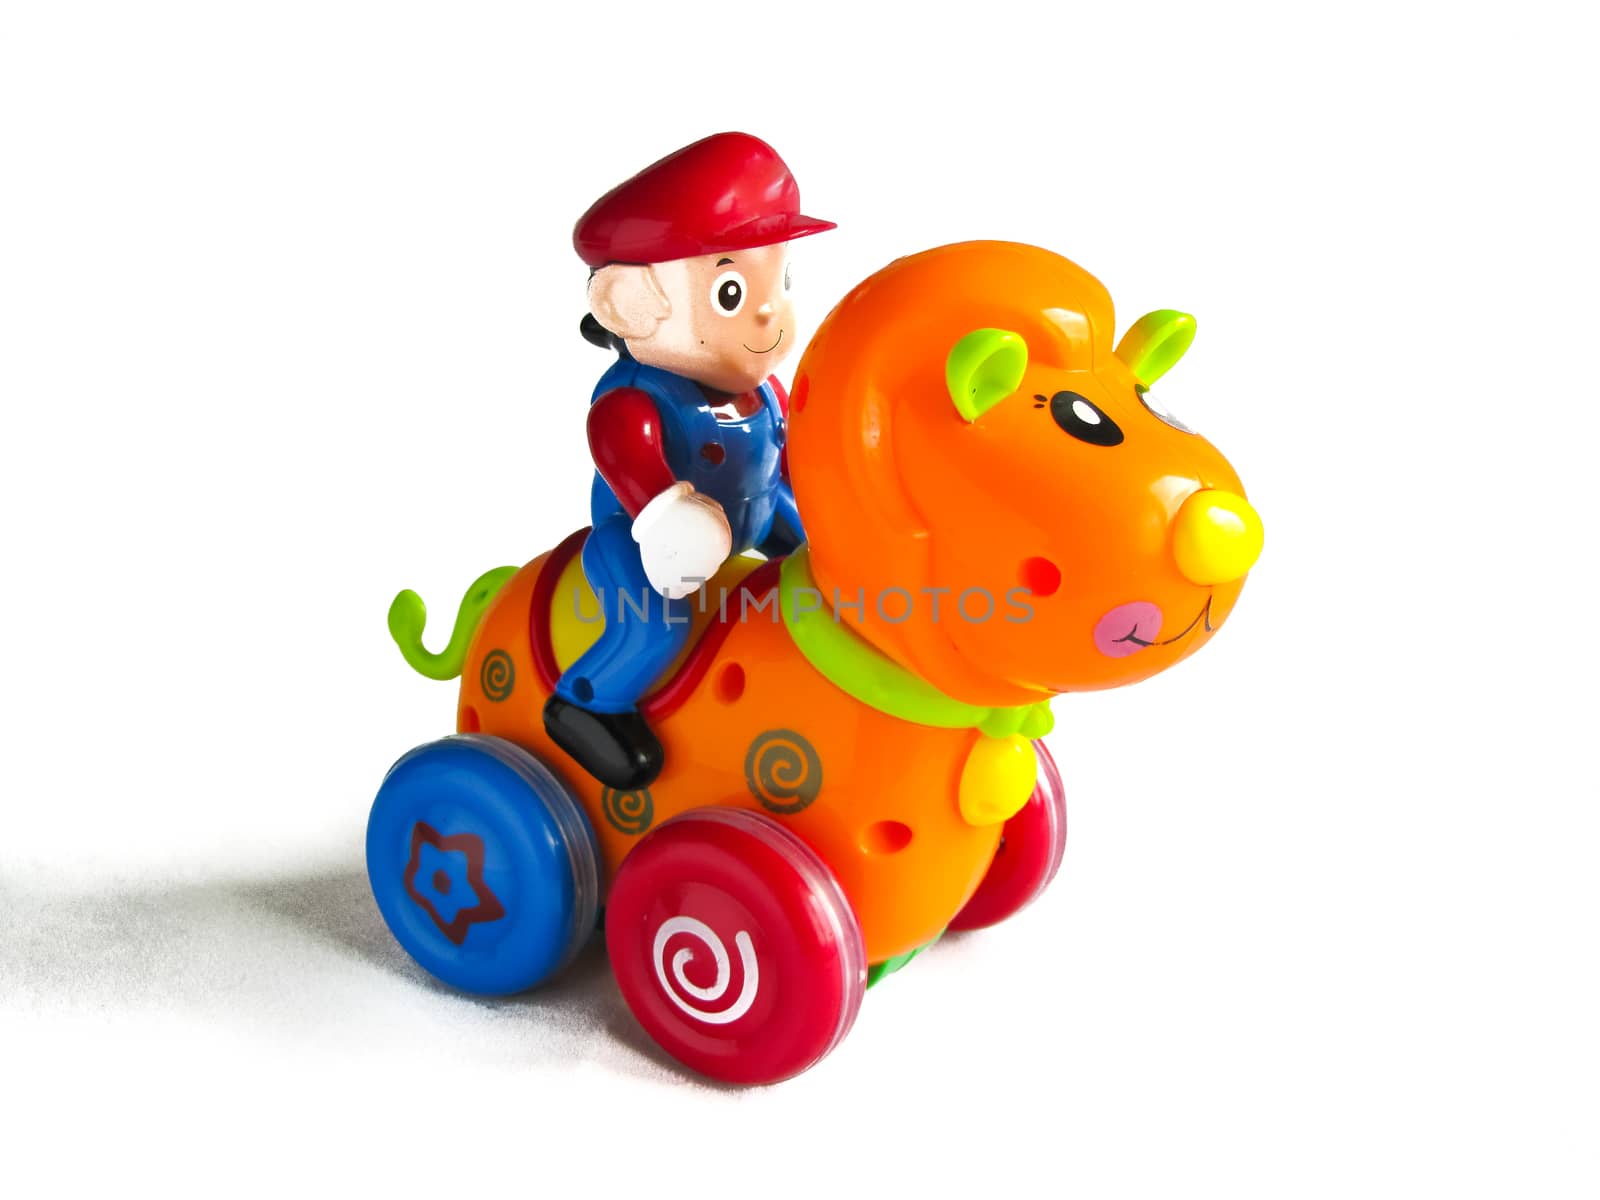 toy rider on horse by rodakm